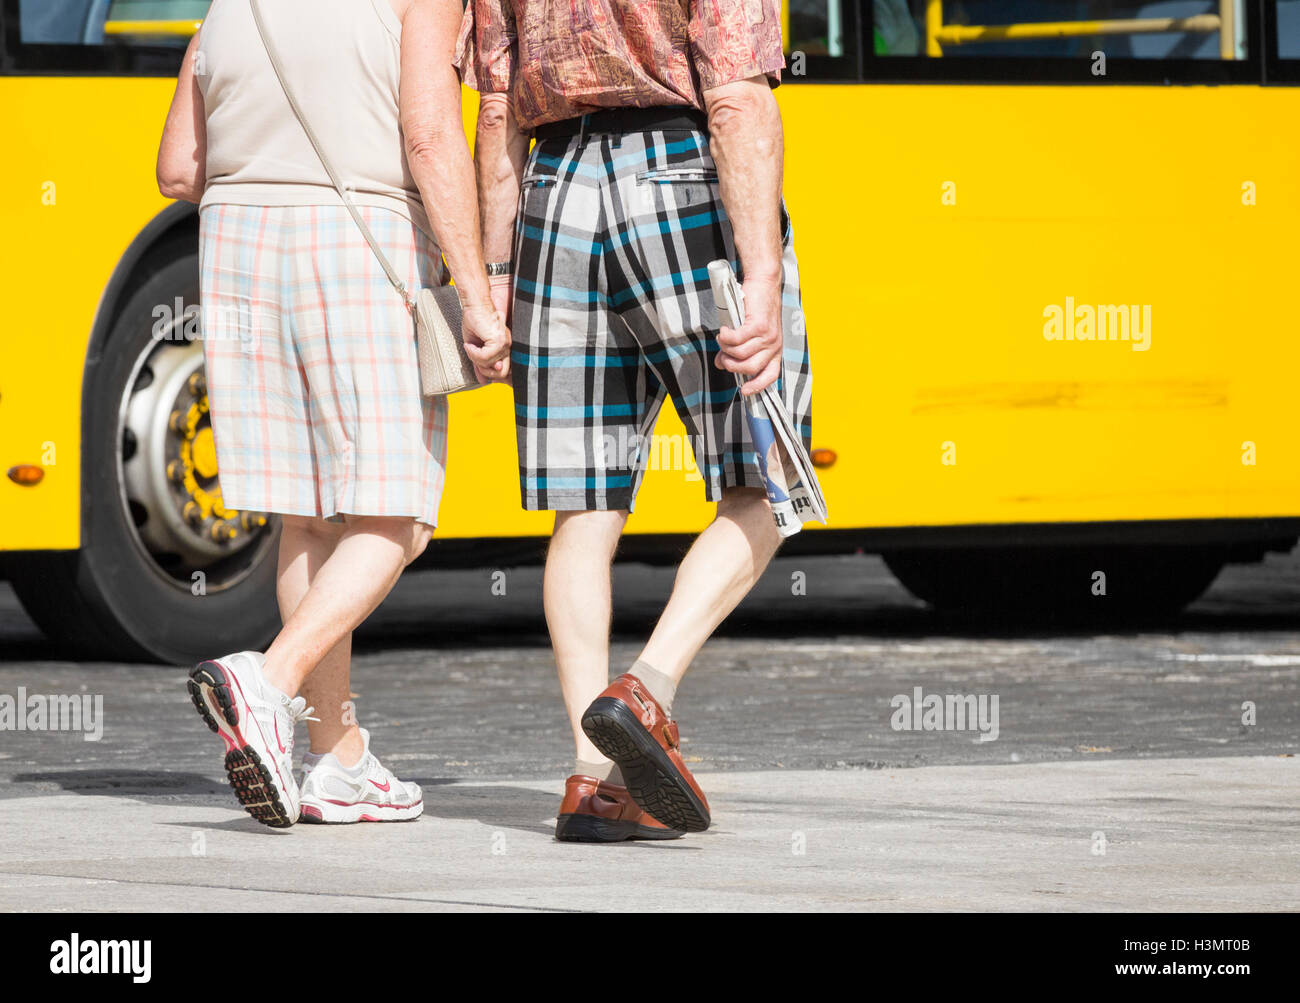 Coppia di anziani in pantaloncini controllato tenendo le mani in vacanza in Spagna. Uomo con copia del giornale inglese. Foto Stock